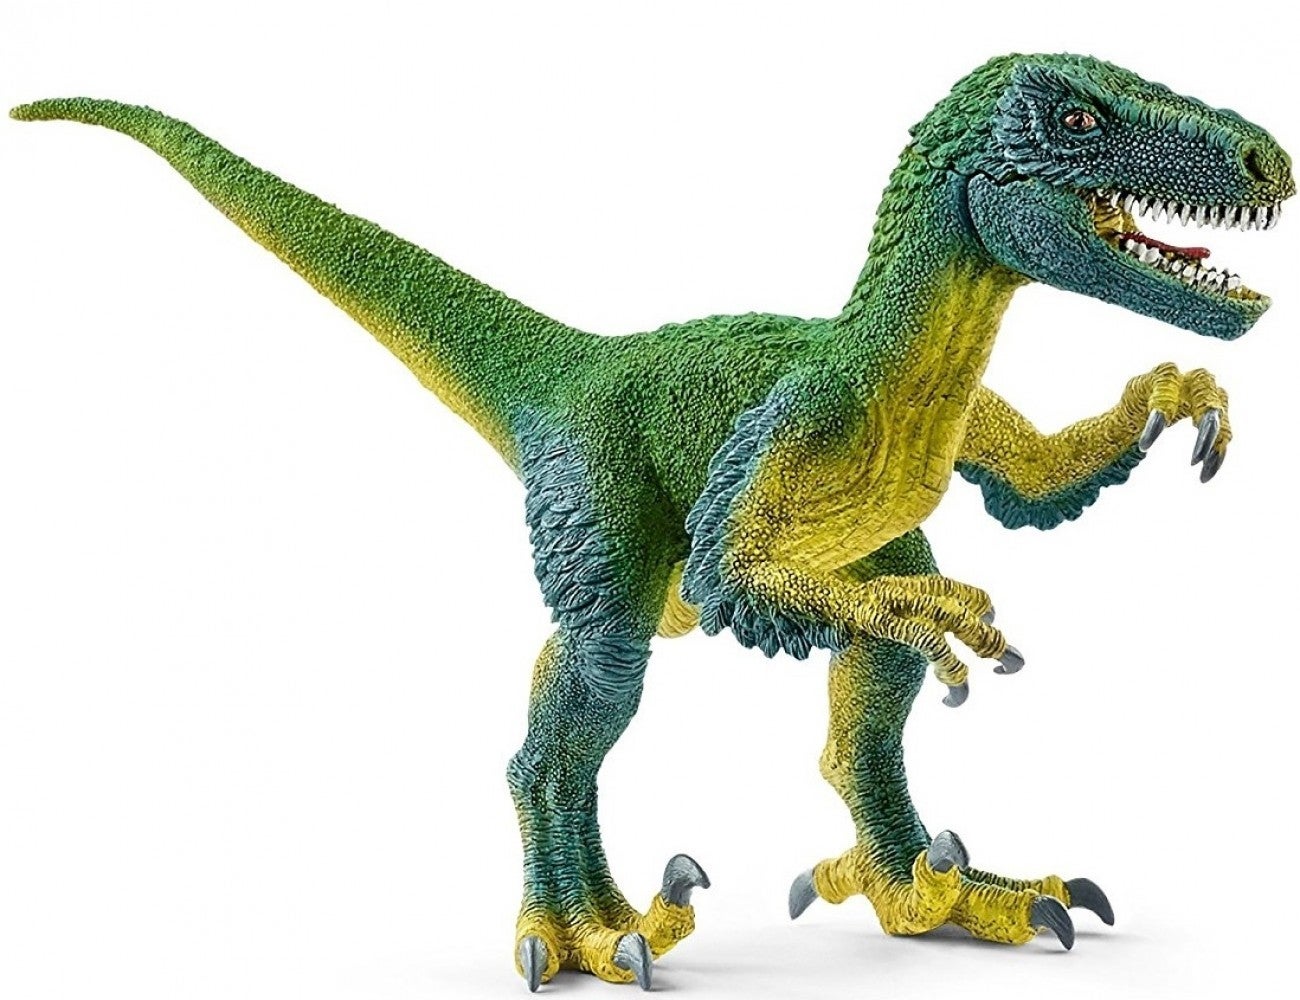 Schleich Dinosaurs - Velociraptor